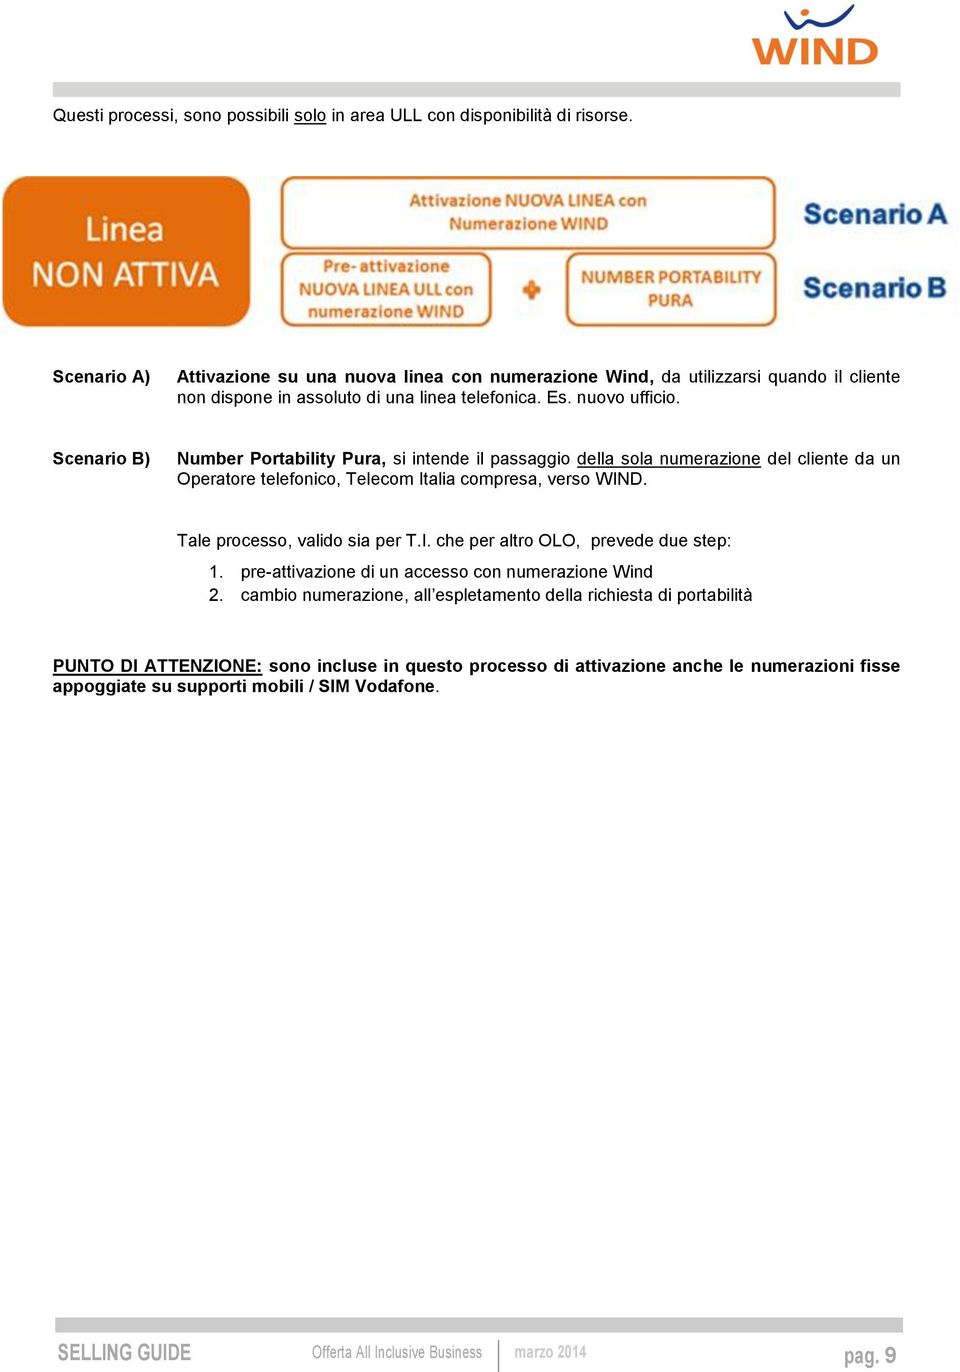 Scenario B) Number Portability Pura, si intende il passaggio della sola numerazione del cliente da un Operatore telefonico, Telecom Italia compresa, verso WIND.